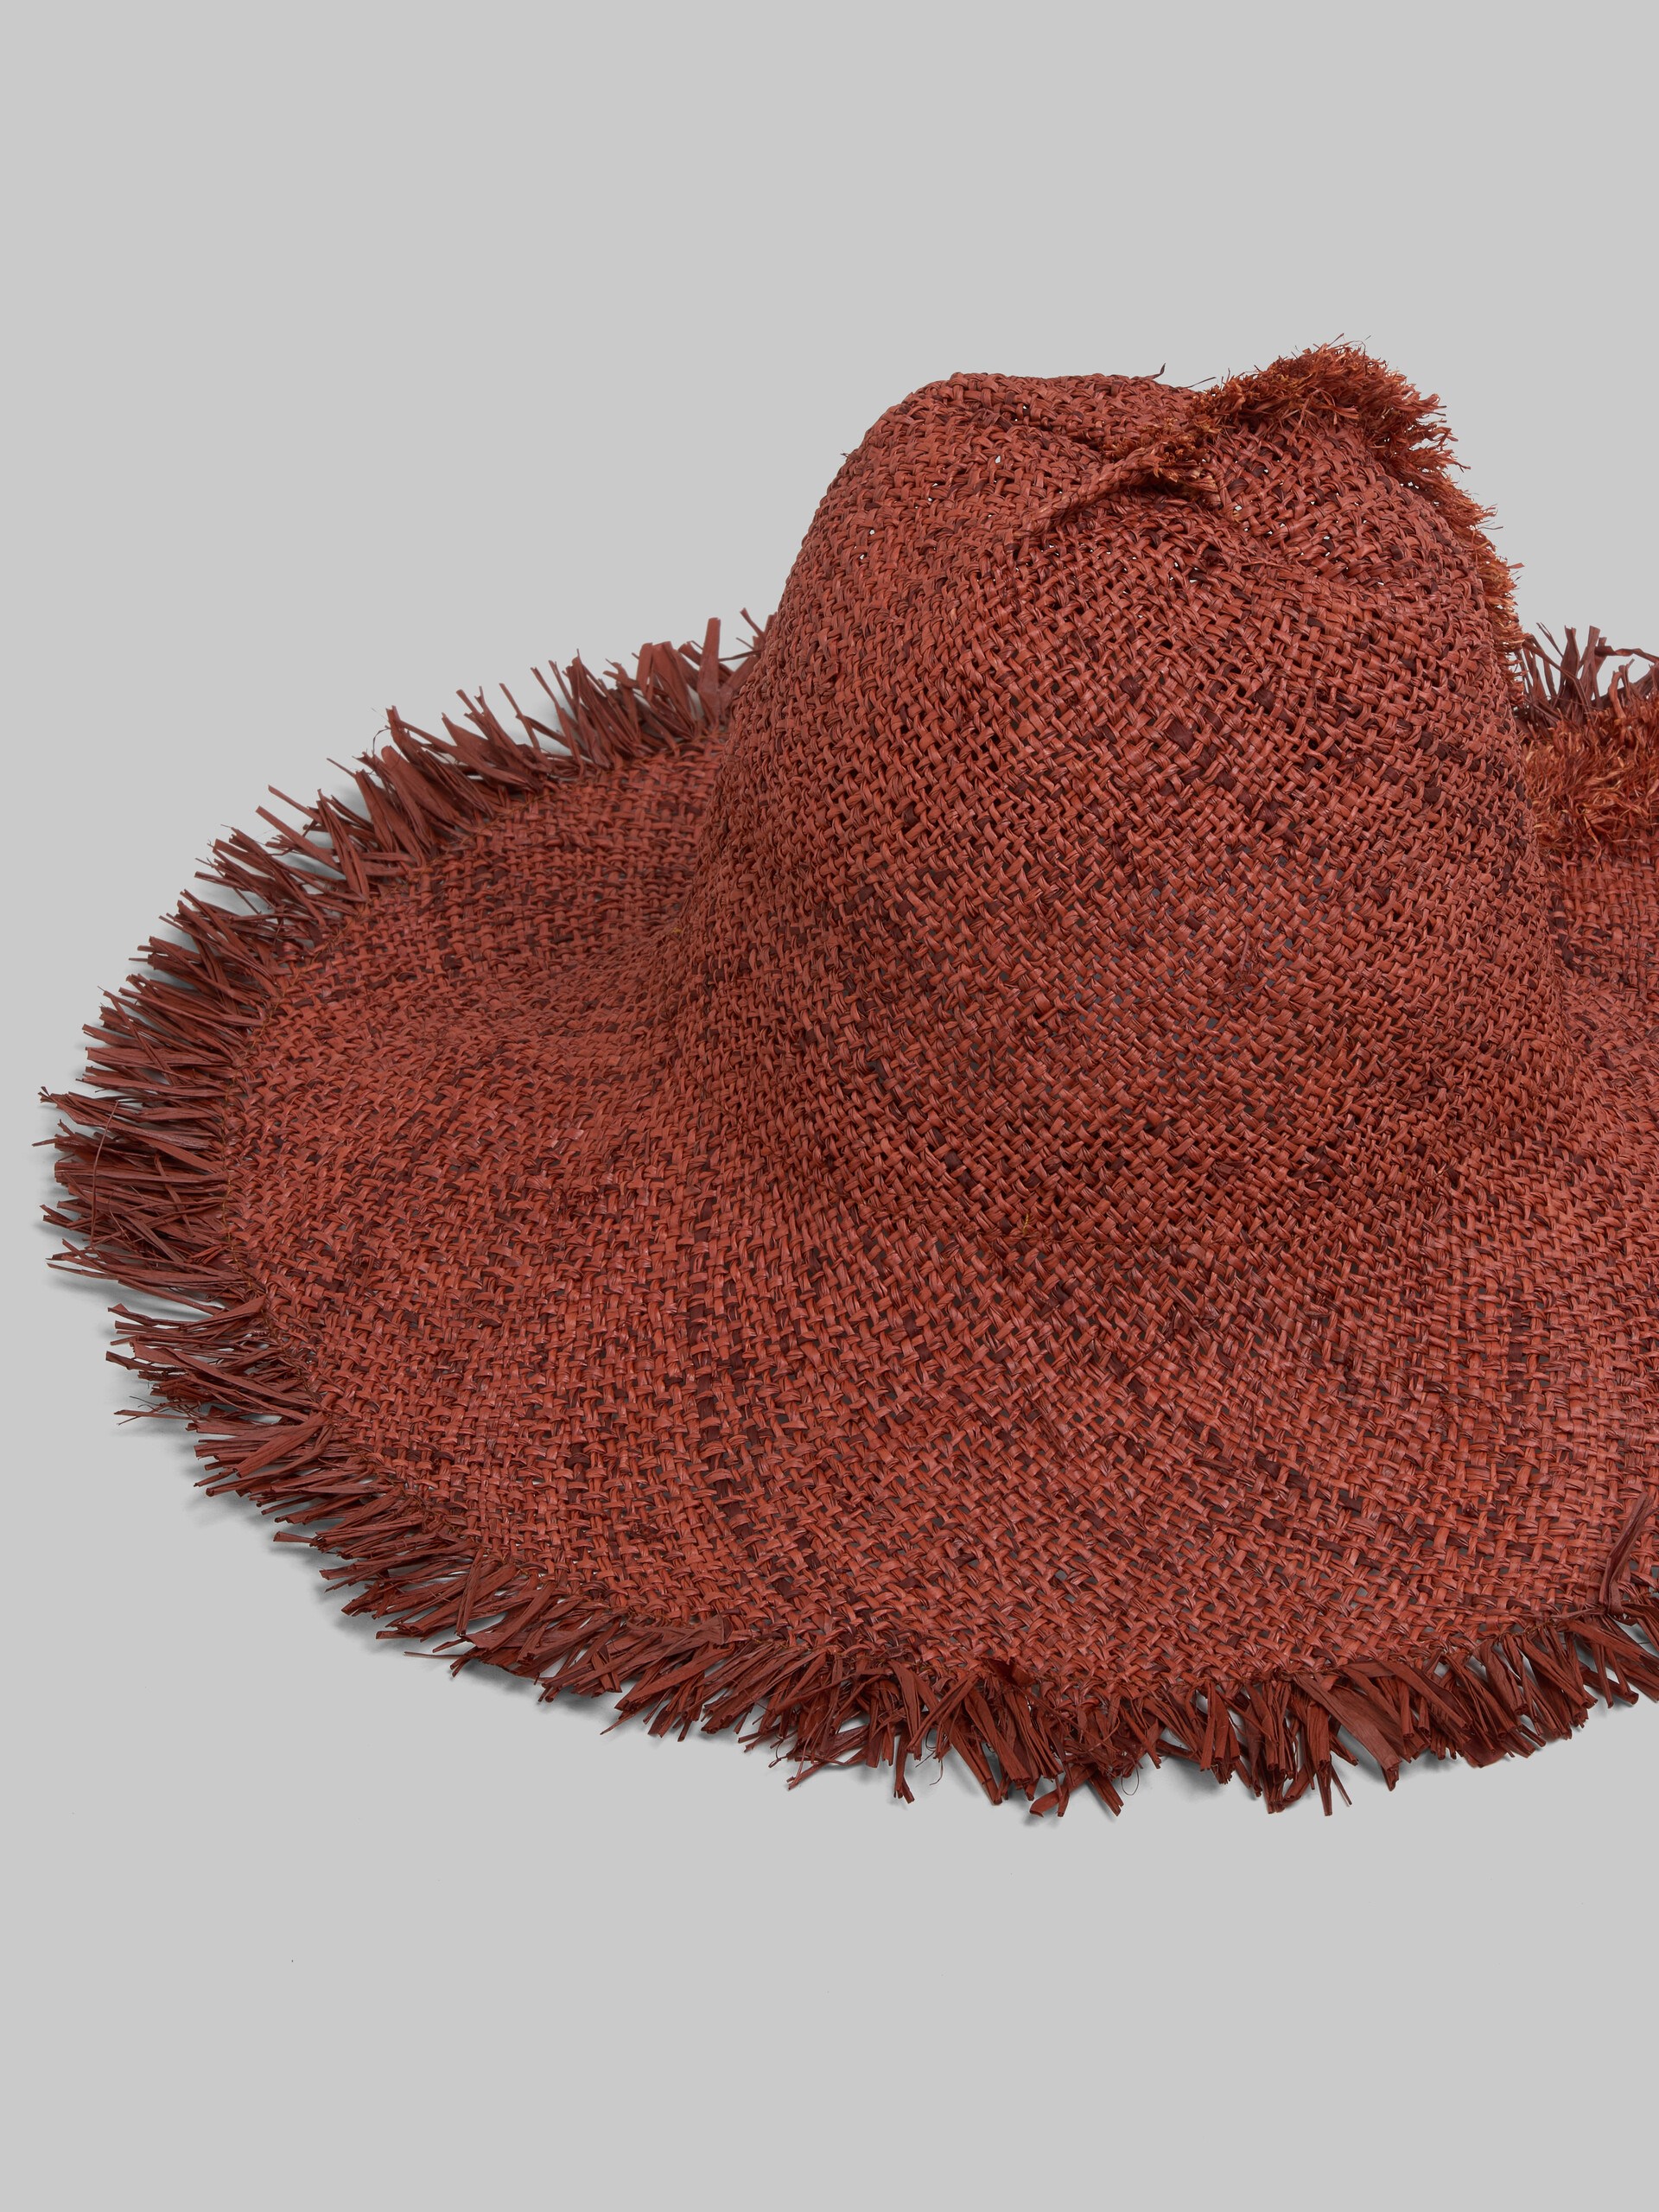 Cappello in rafia marrone con bordo sfrangiato - Cappelli - Image 4